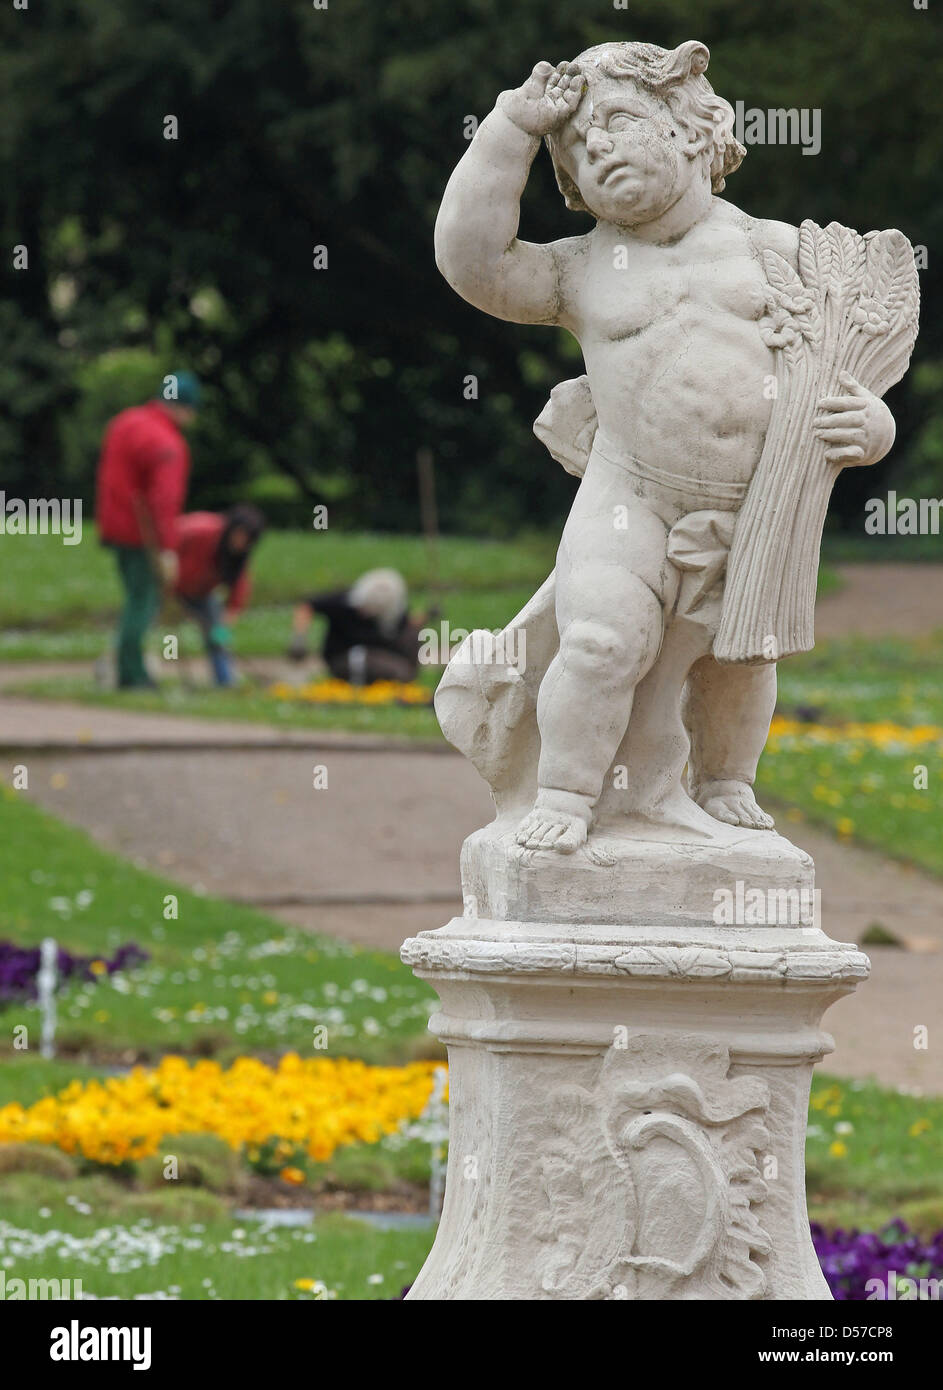 Dietro un angelo statua, tre giardinieri lavoro nel giardino barocco del castello in Lichtenwalde Niederwiesa, Germania, 06 maggio 2010. Nel XVIII secolo il castello barocco è uno della Germania la maggior parte dei bei giardini. Foto: Jan Woitas Foto Stock